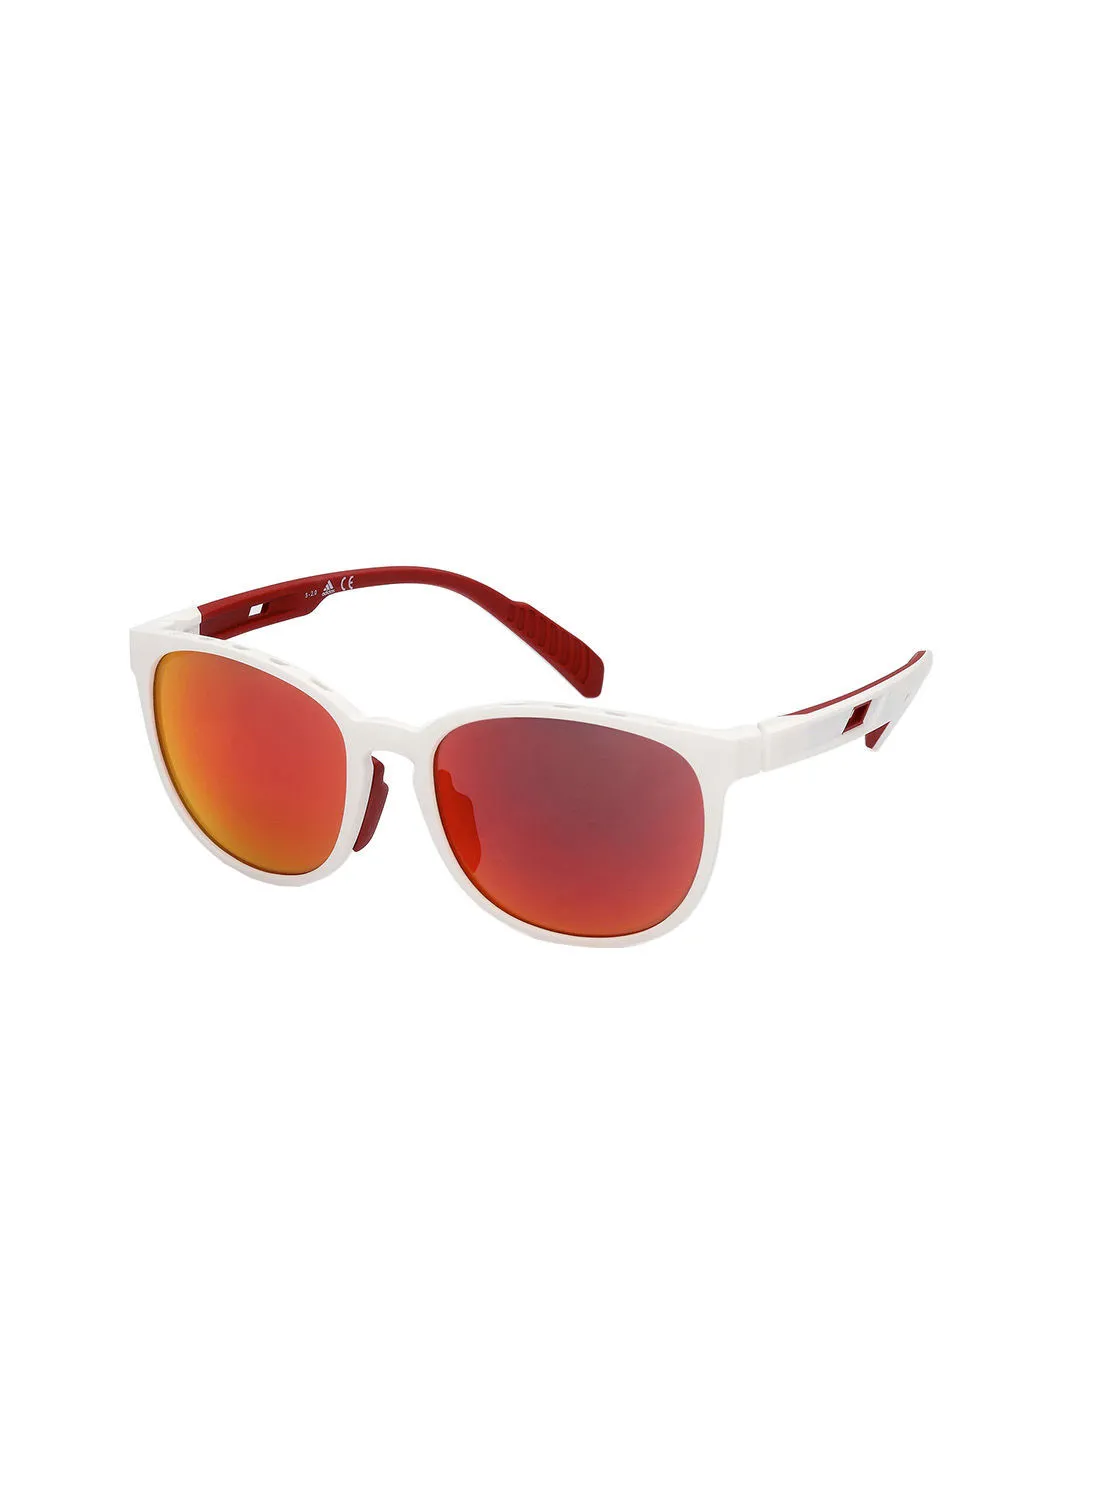 Adidas Round Sunglasses SP003621L56